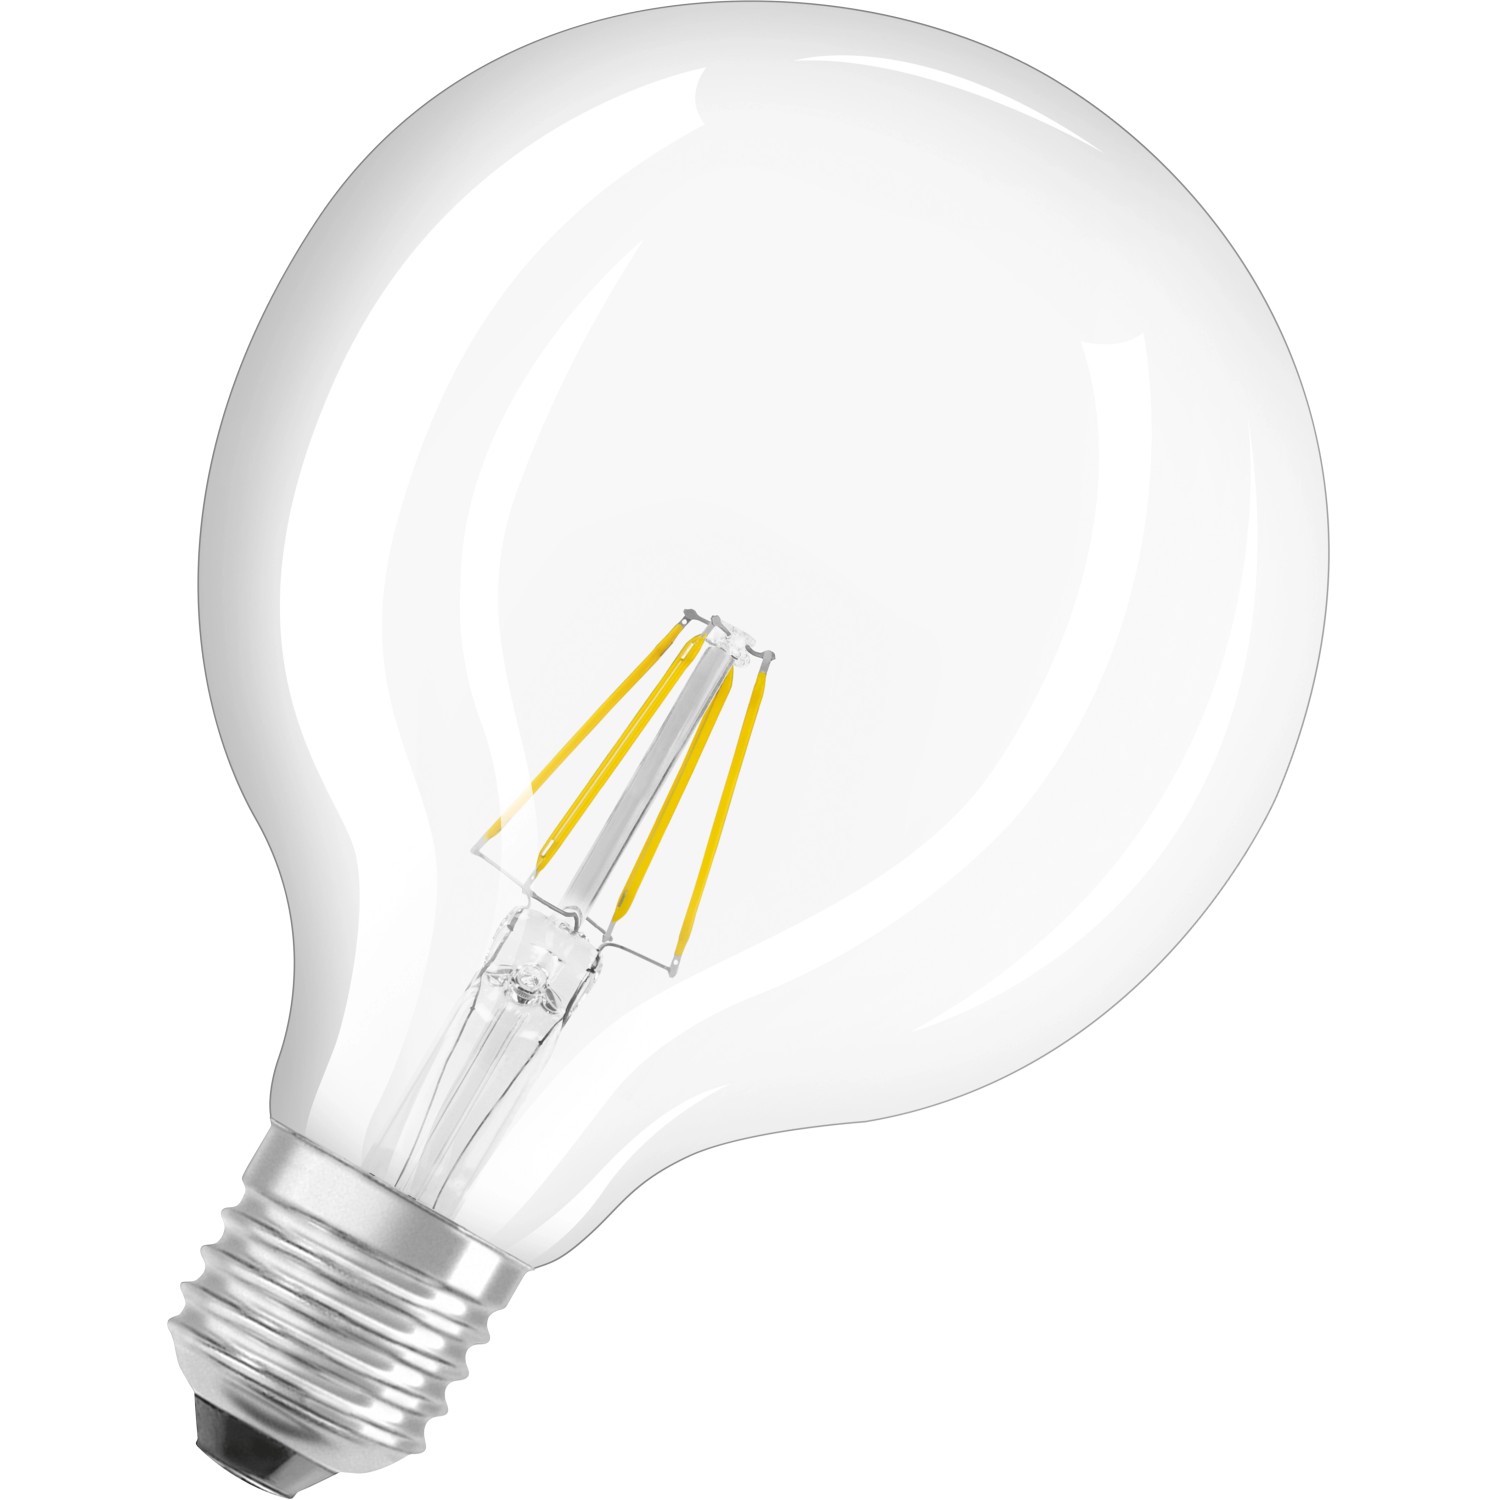 Osram LED-Filament-Leuchtmittel Globeform E27 / 6 W (806 lm) Warmweiß